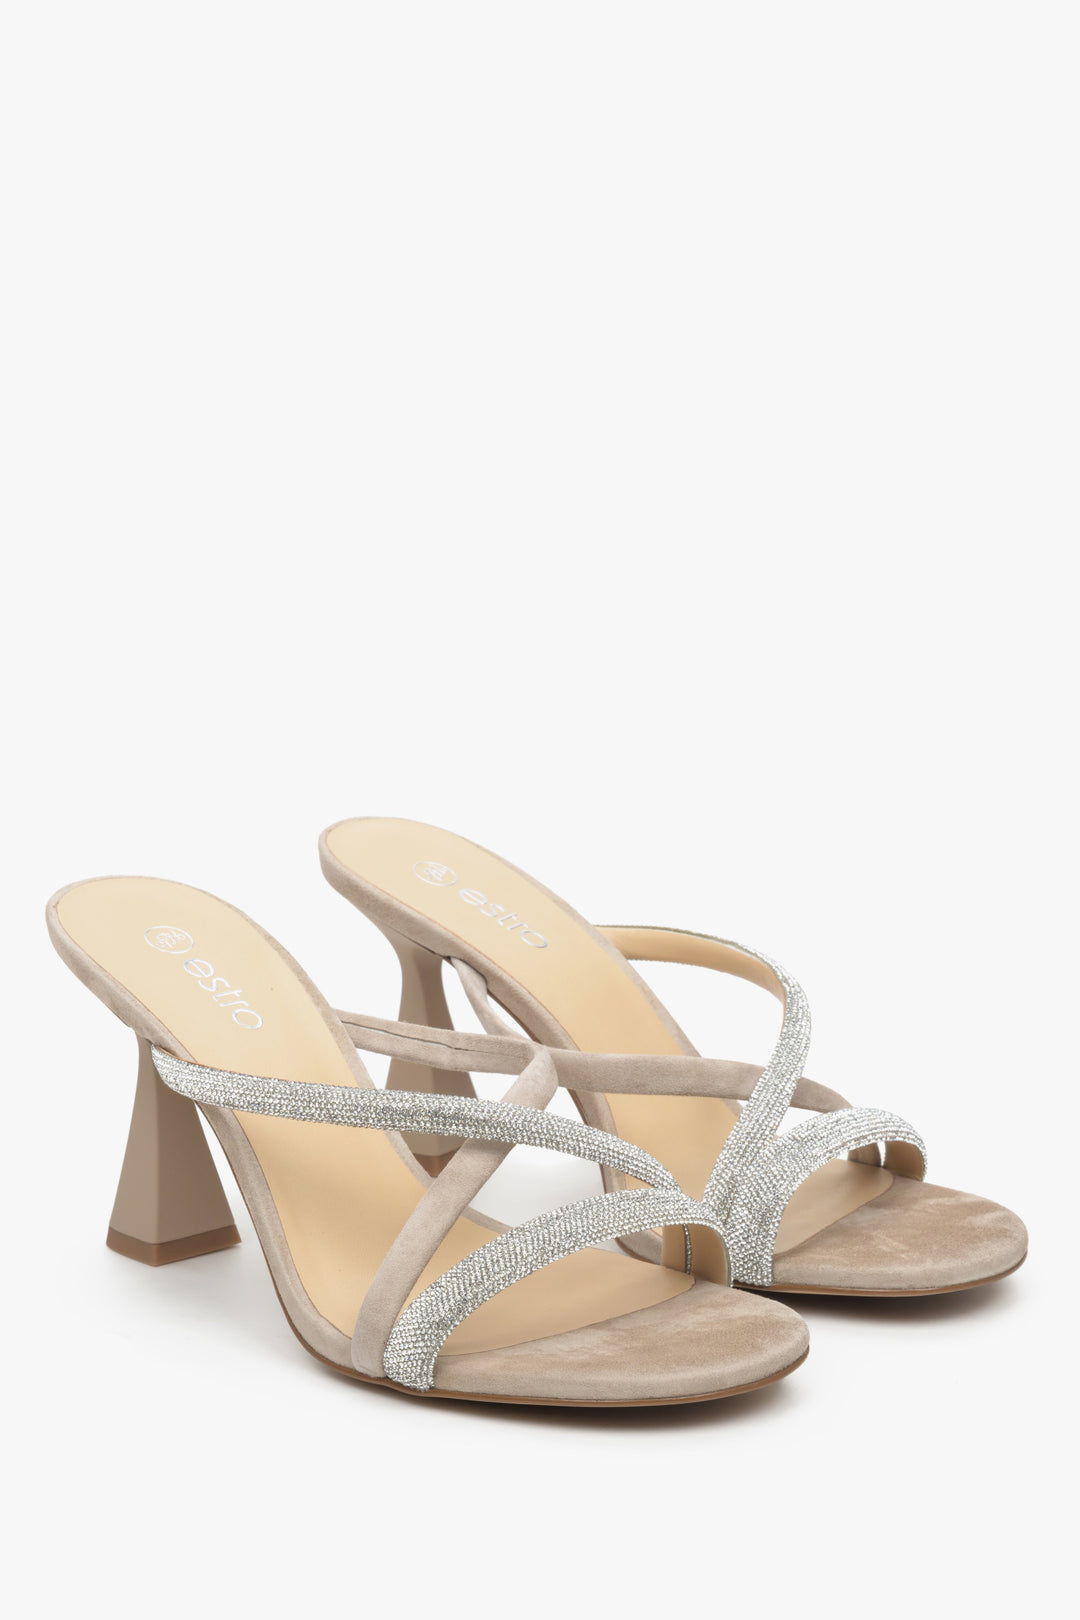 Women's beige stiletto heeled sandals.